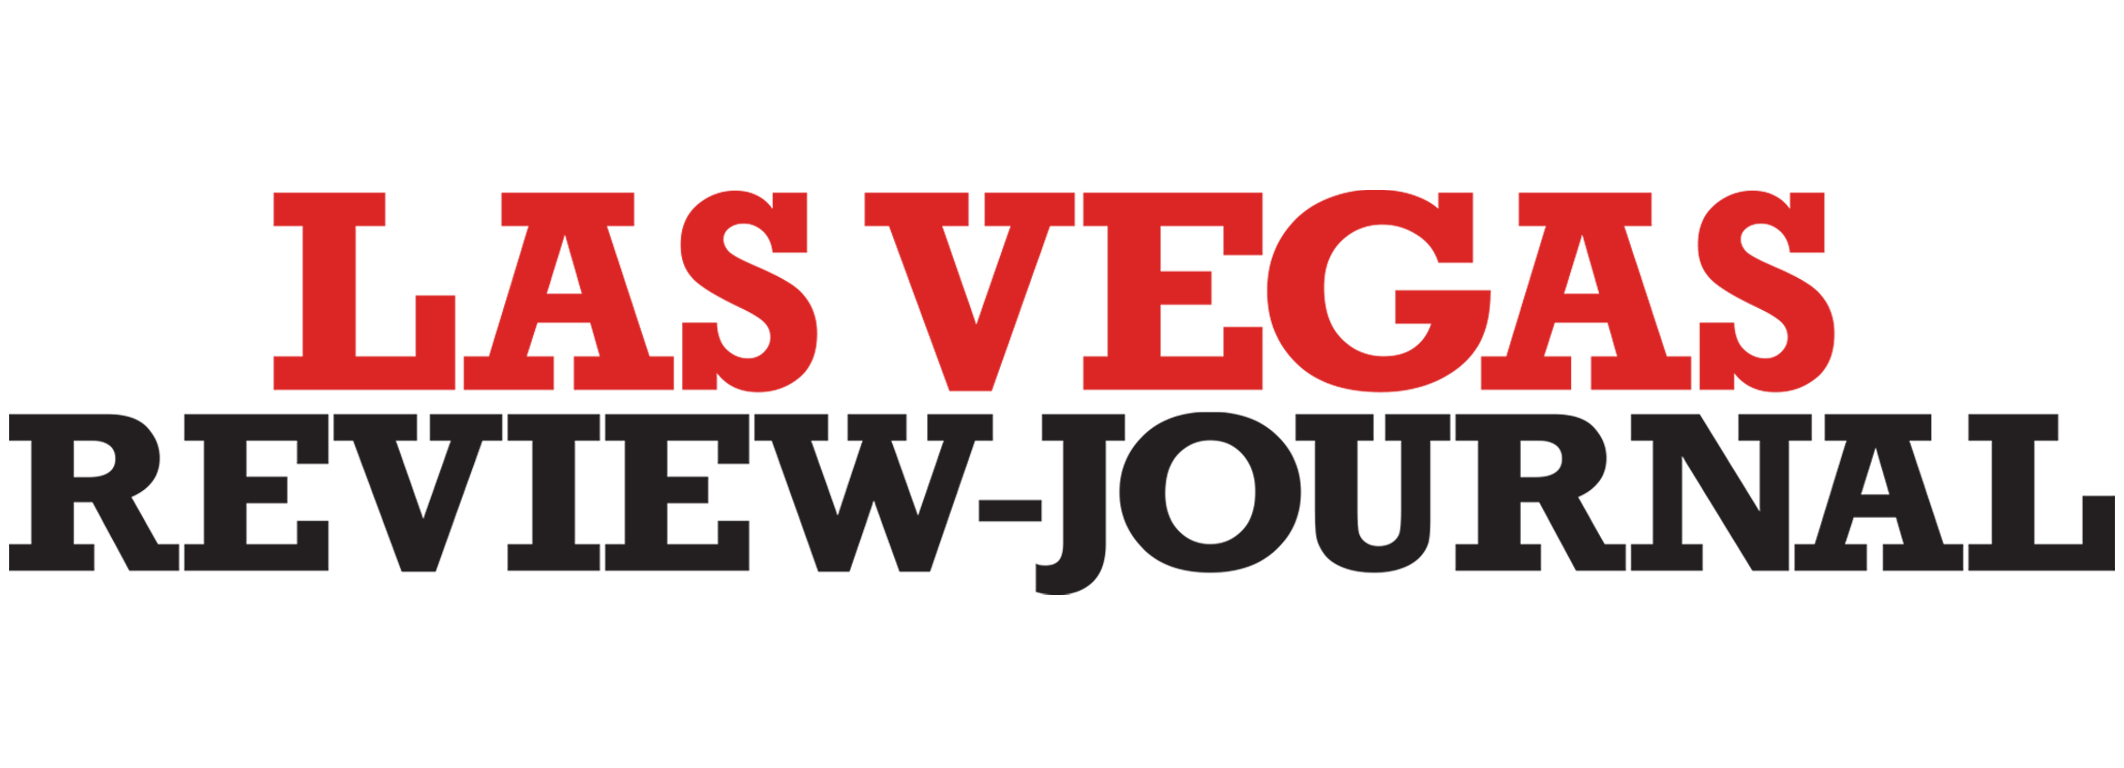 las vegas review journal logo